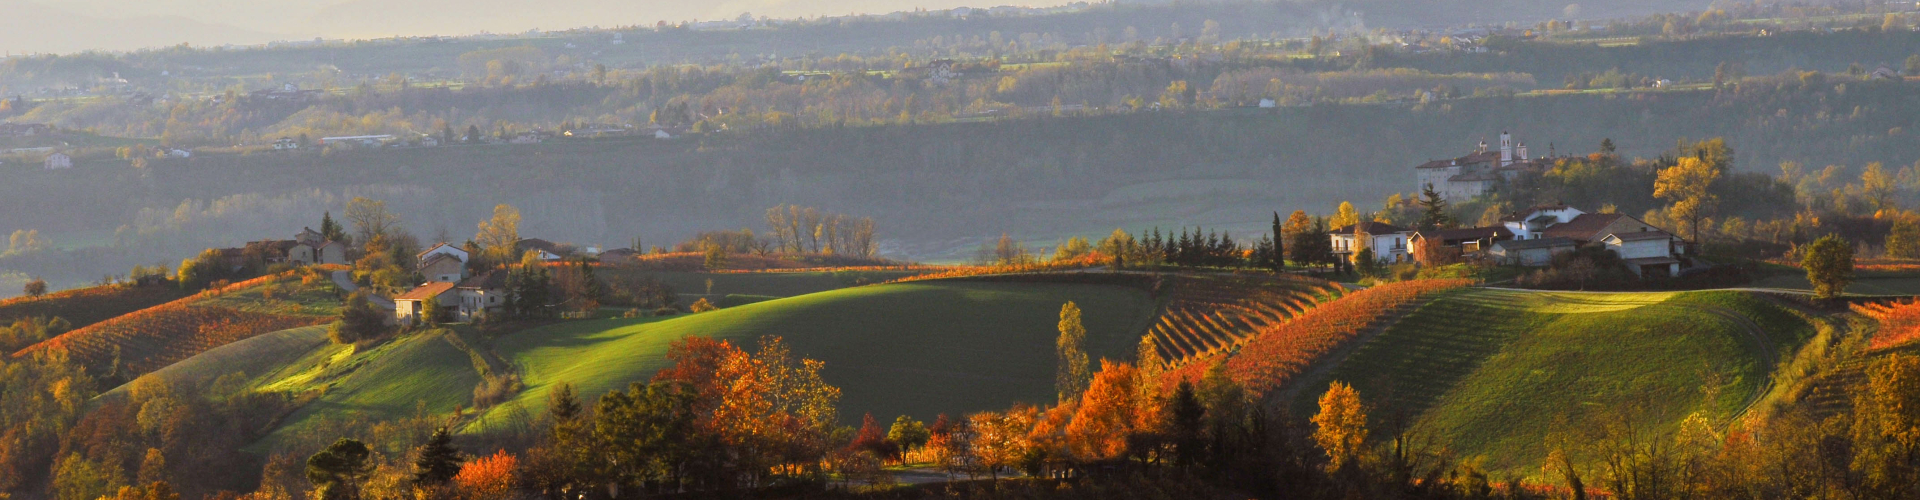 Wijnen in de Piemonte